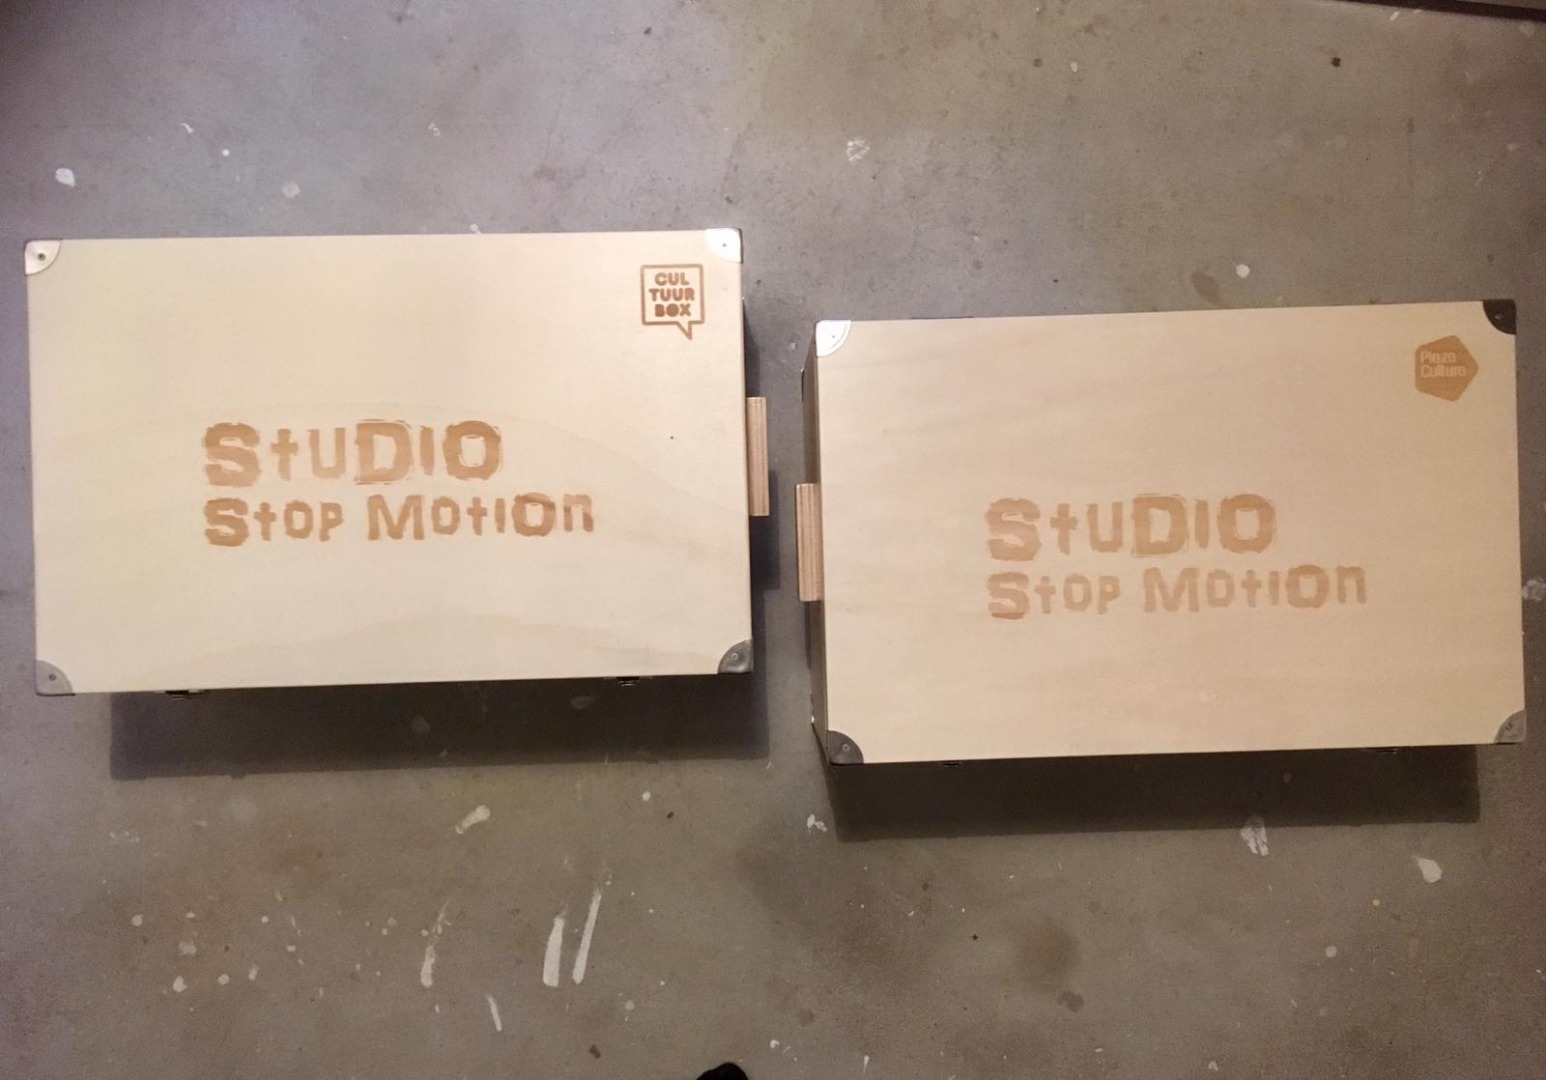 Studio stop motion